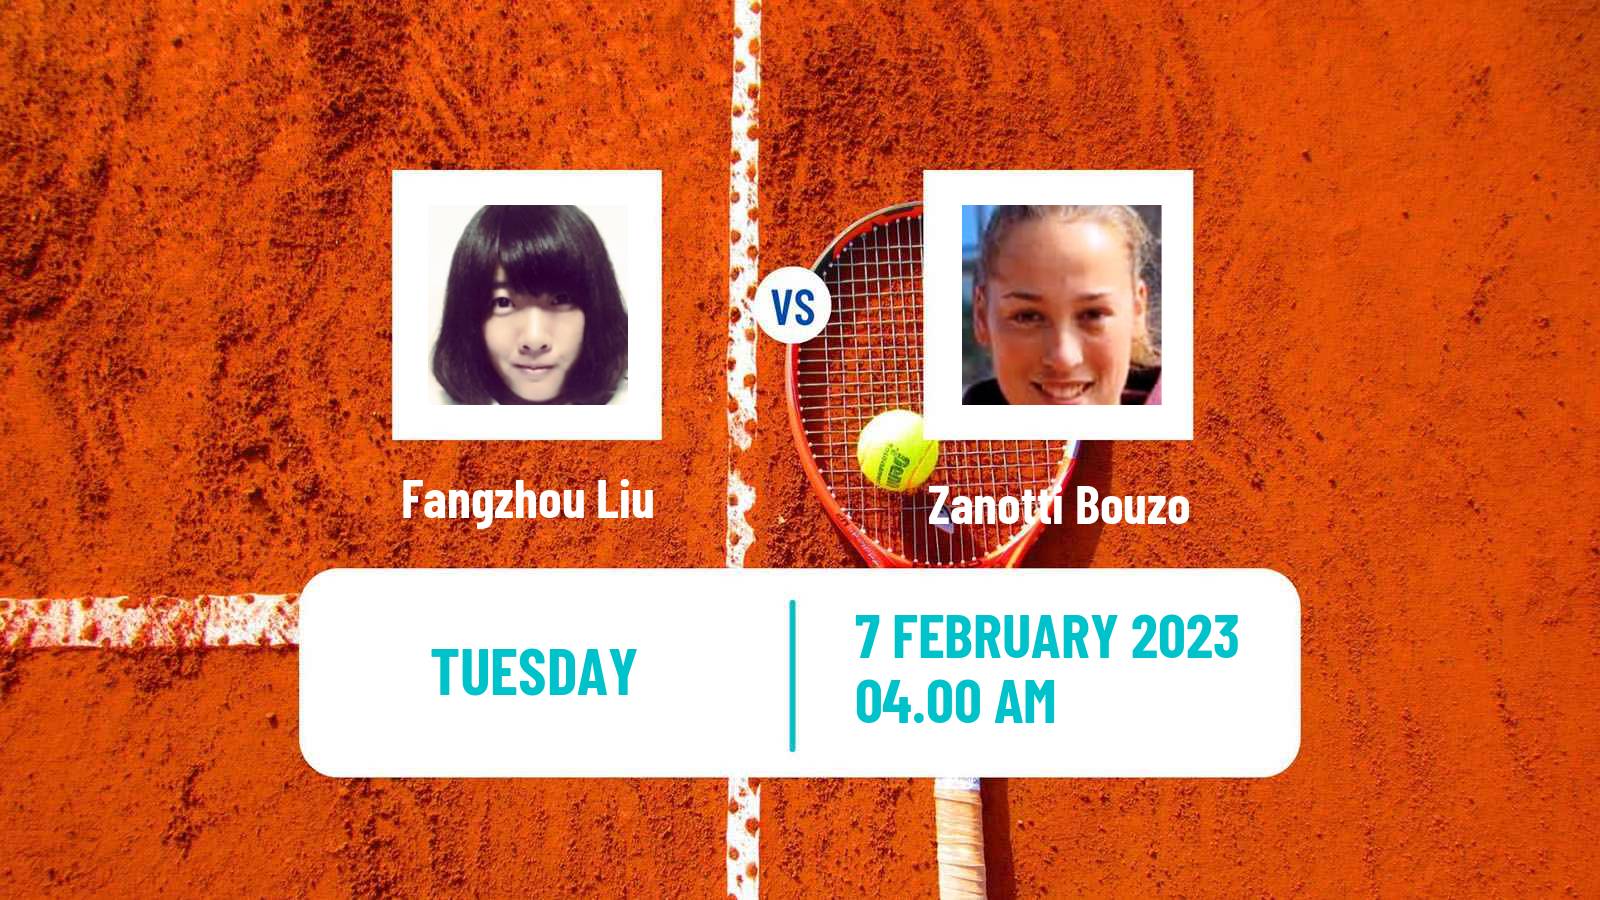 Tennis ITF Tournaments Fangzhou Liu - Zanotti Bouzo